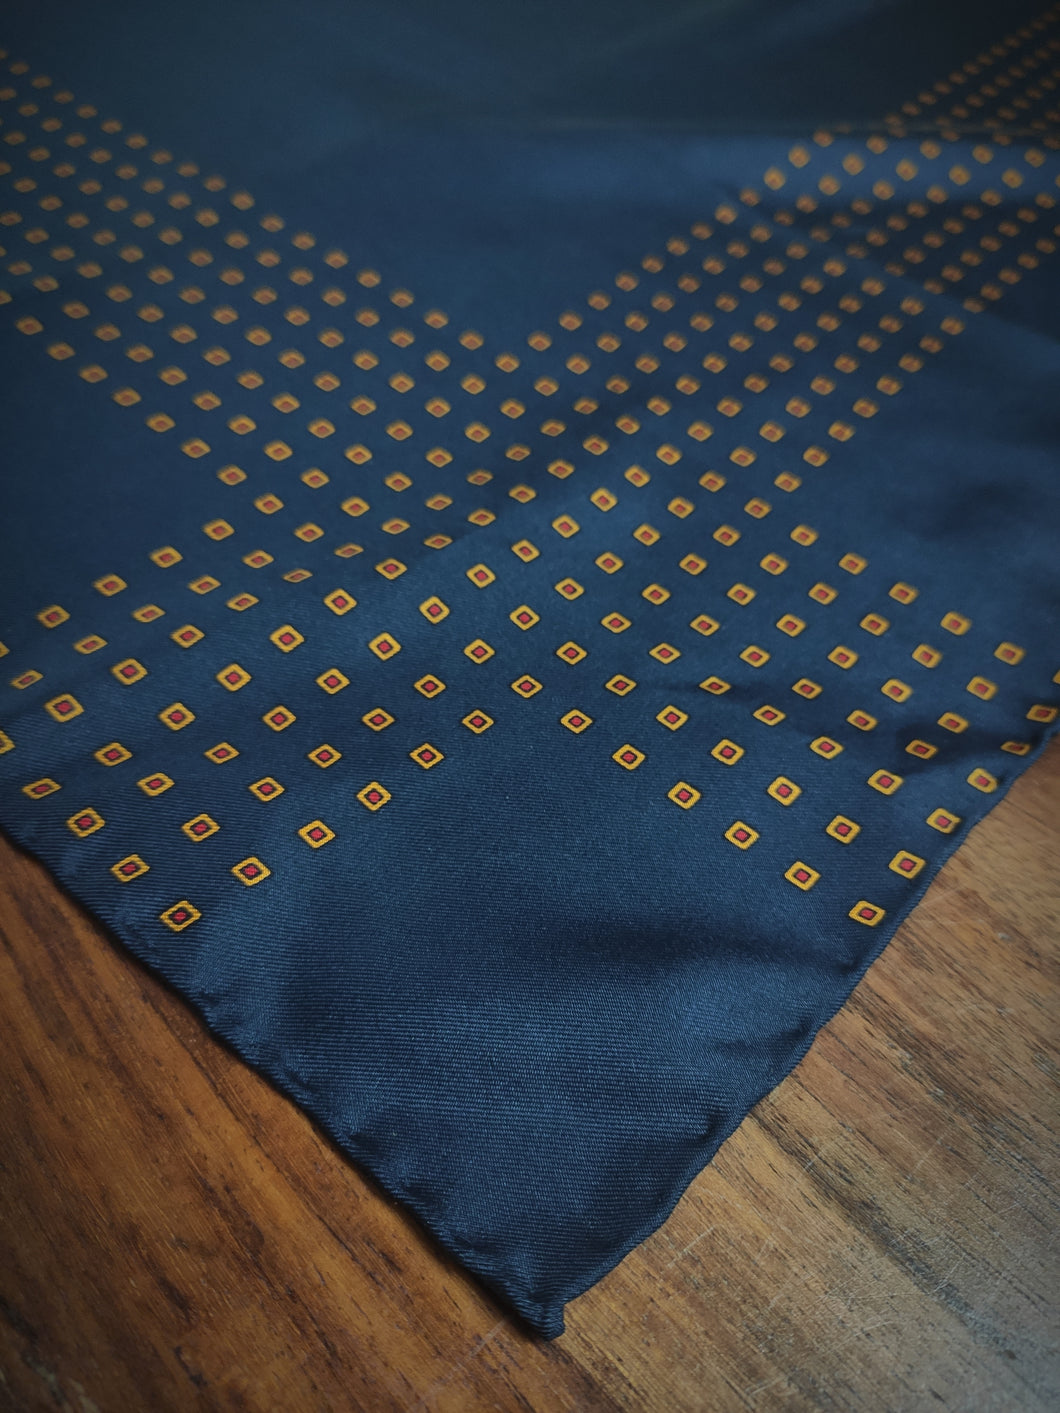 Christian Dior vintage pochette bleue nuit en soie à motif géométrique